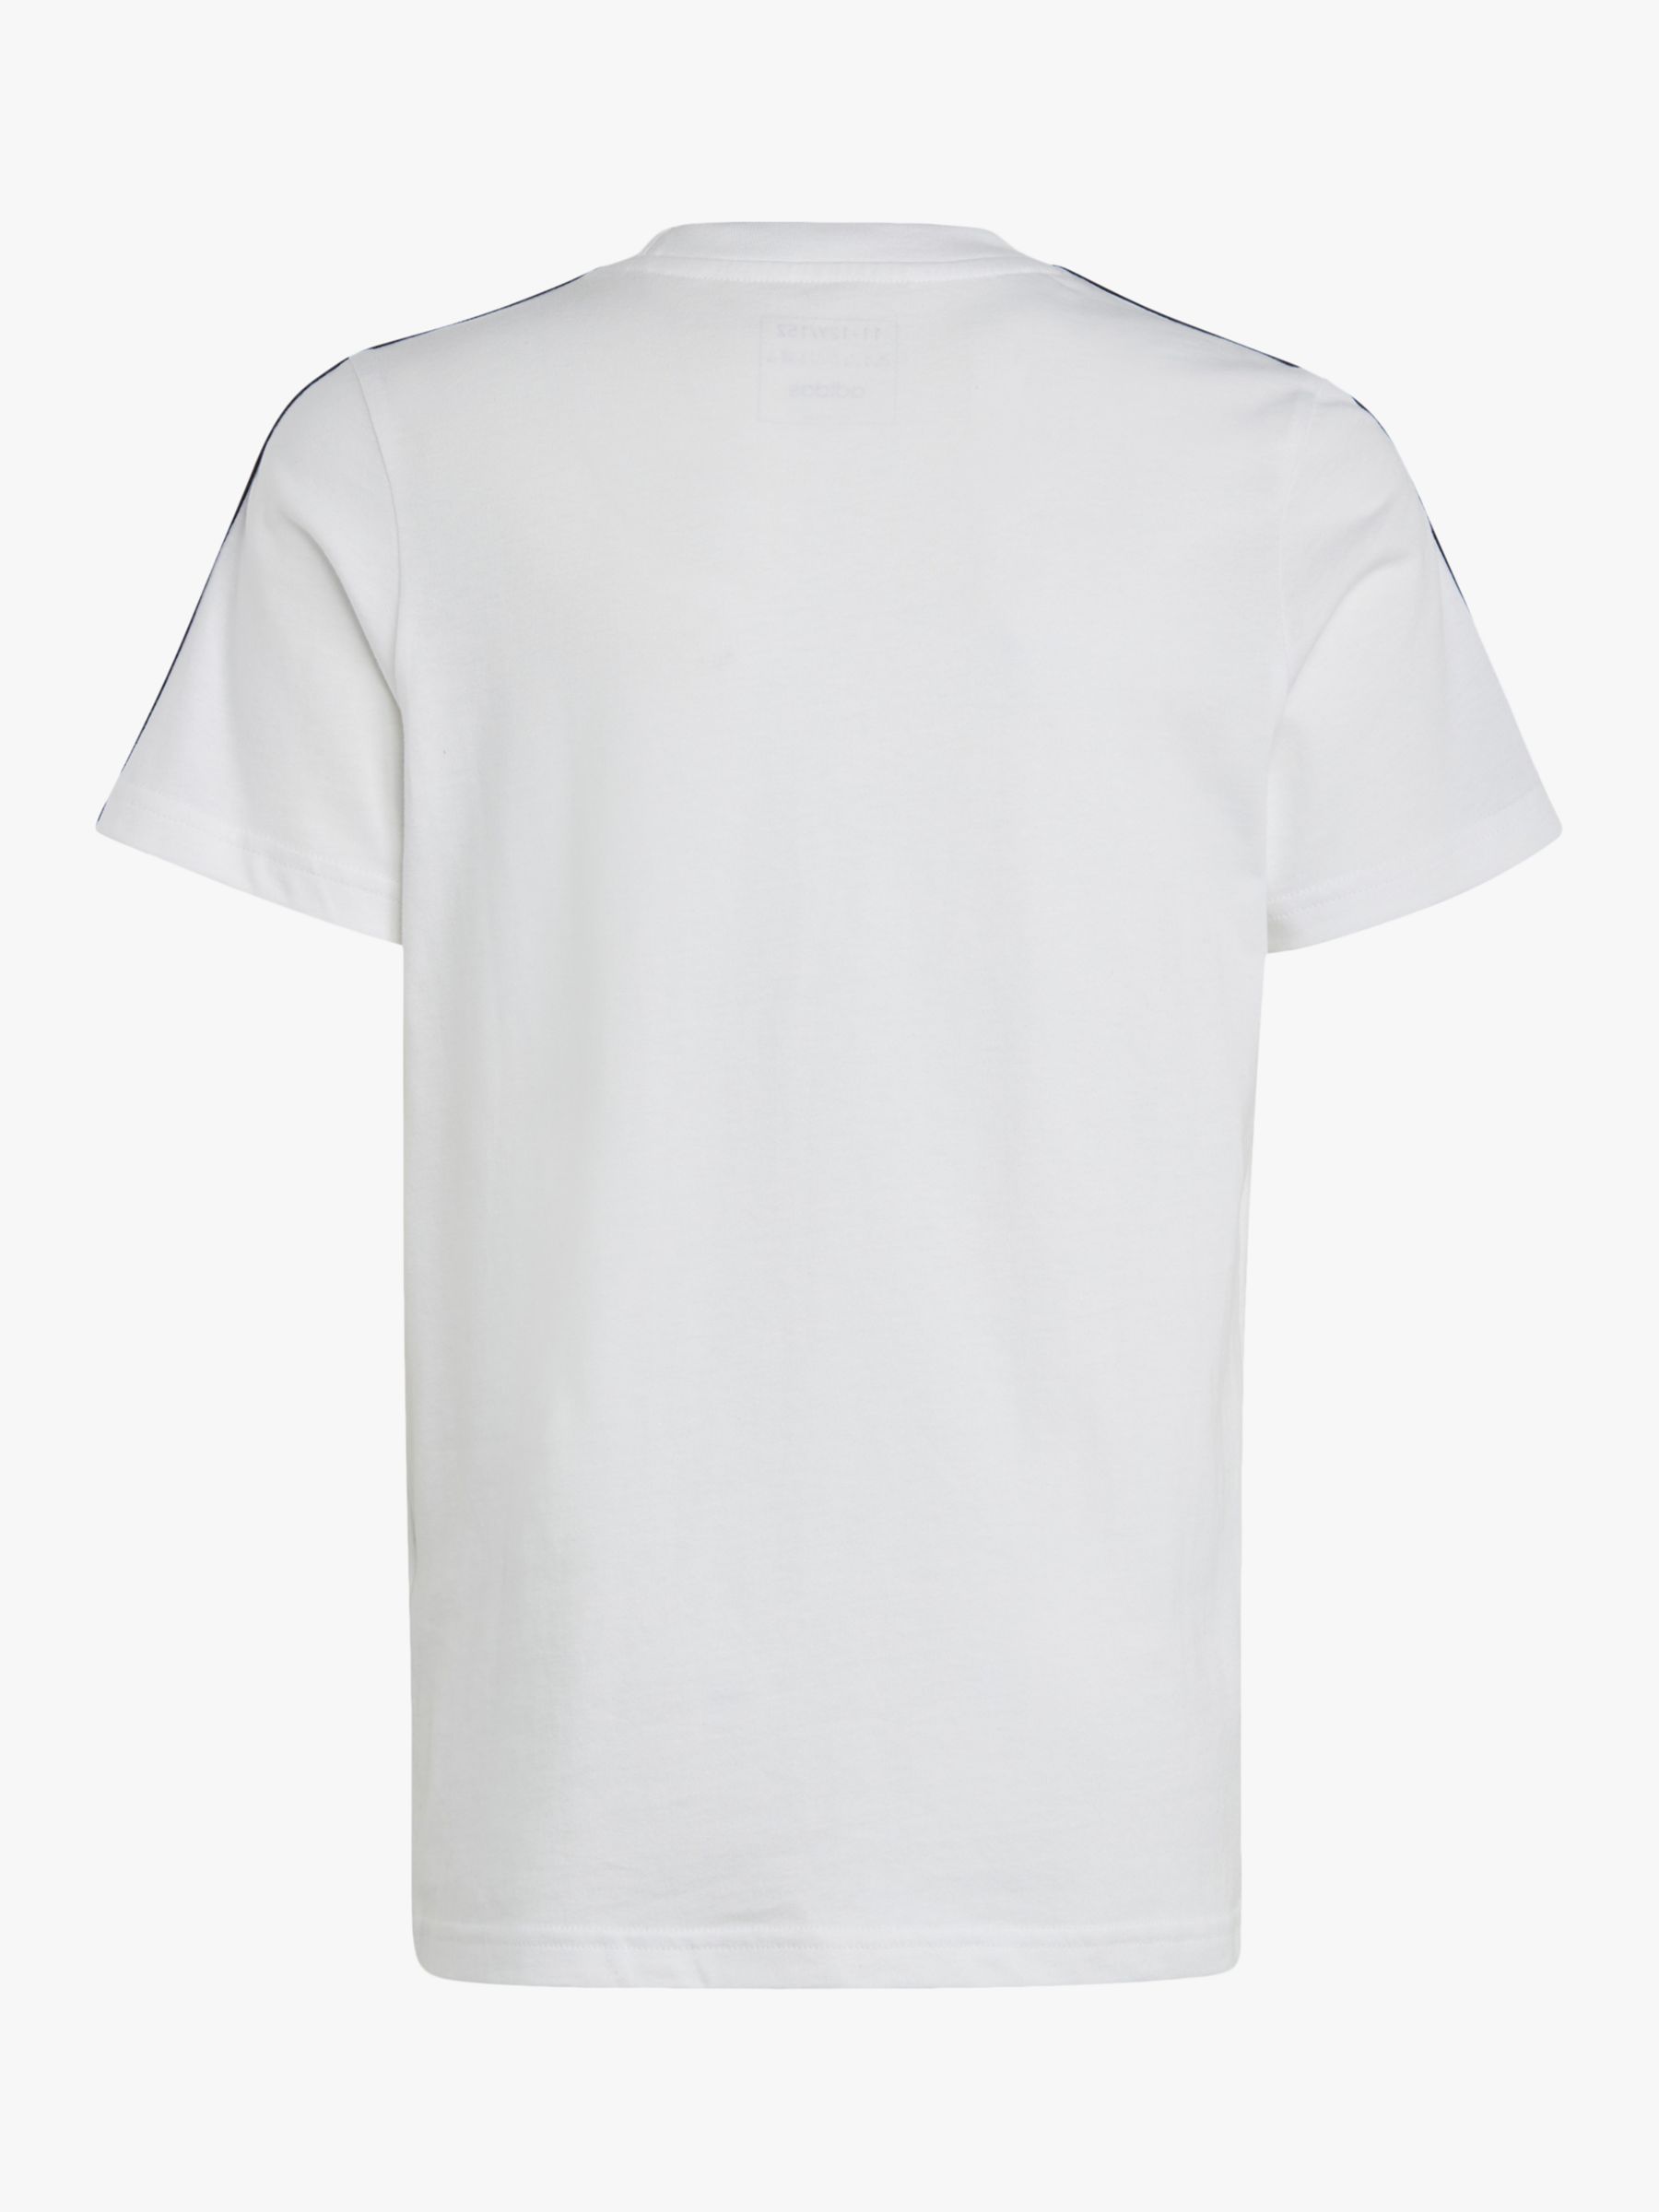 adidas Kids' Stripe Logo Cotton T-Shirt, White at John Lewis & Partners